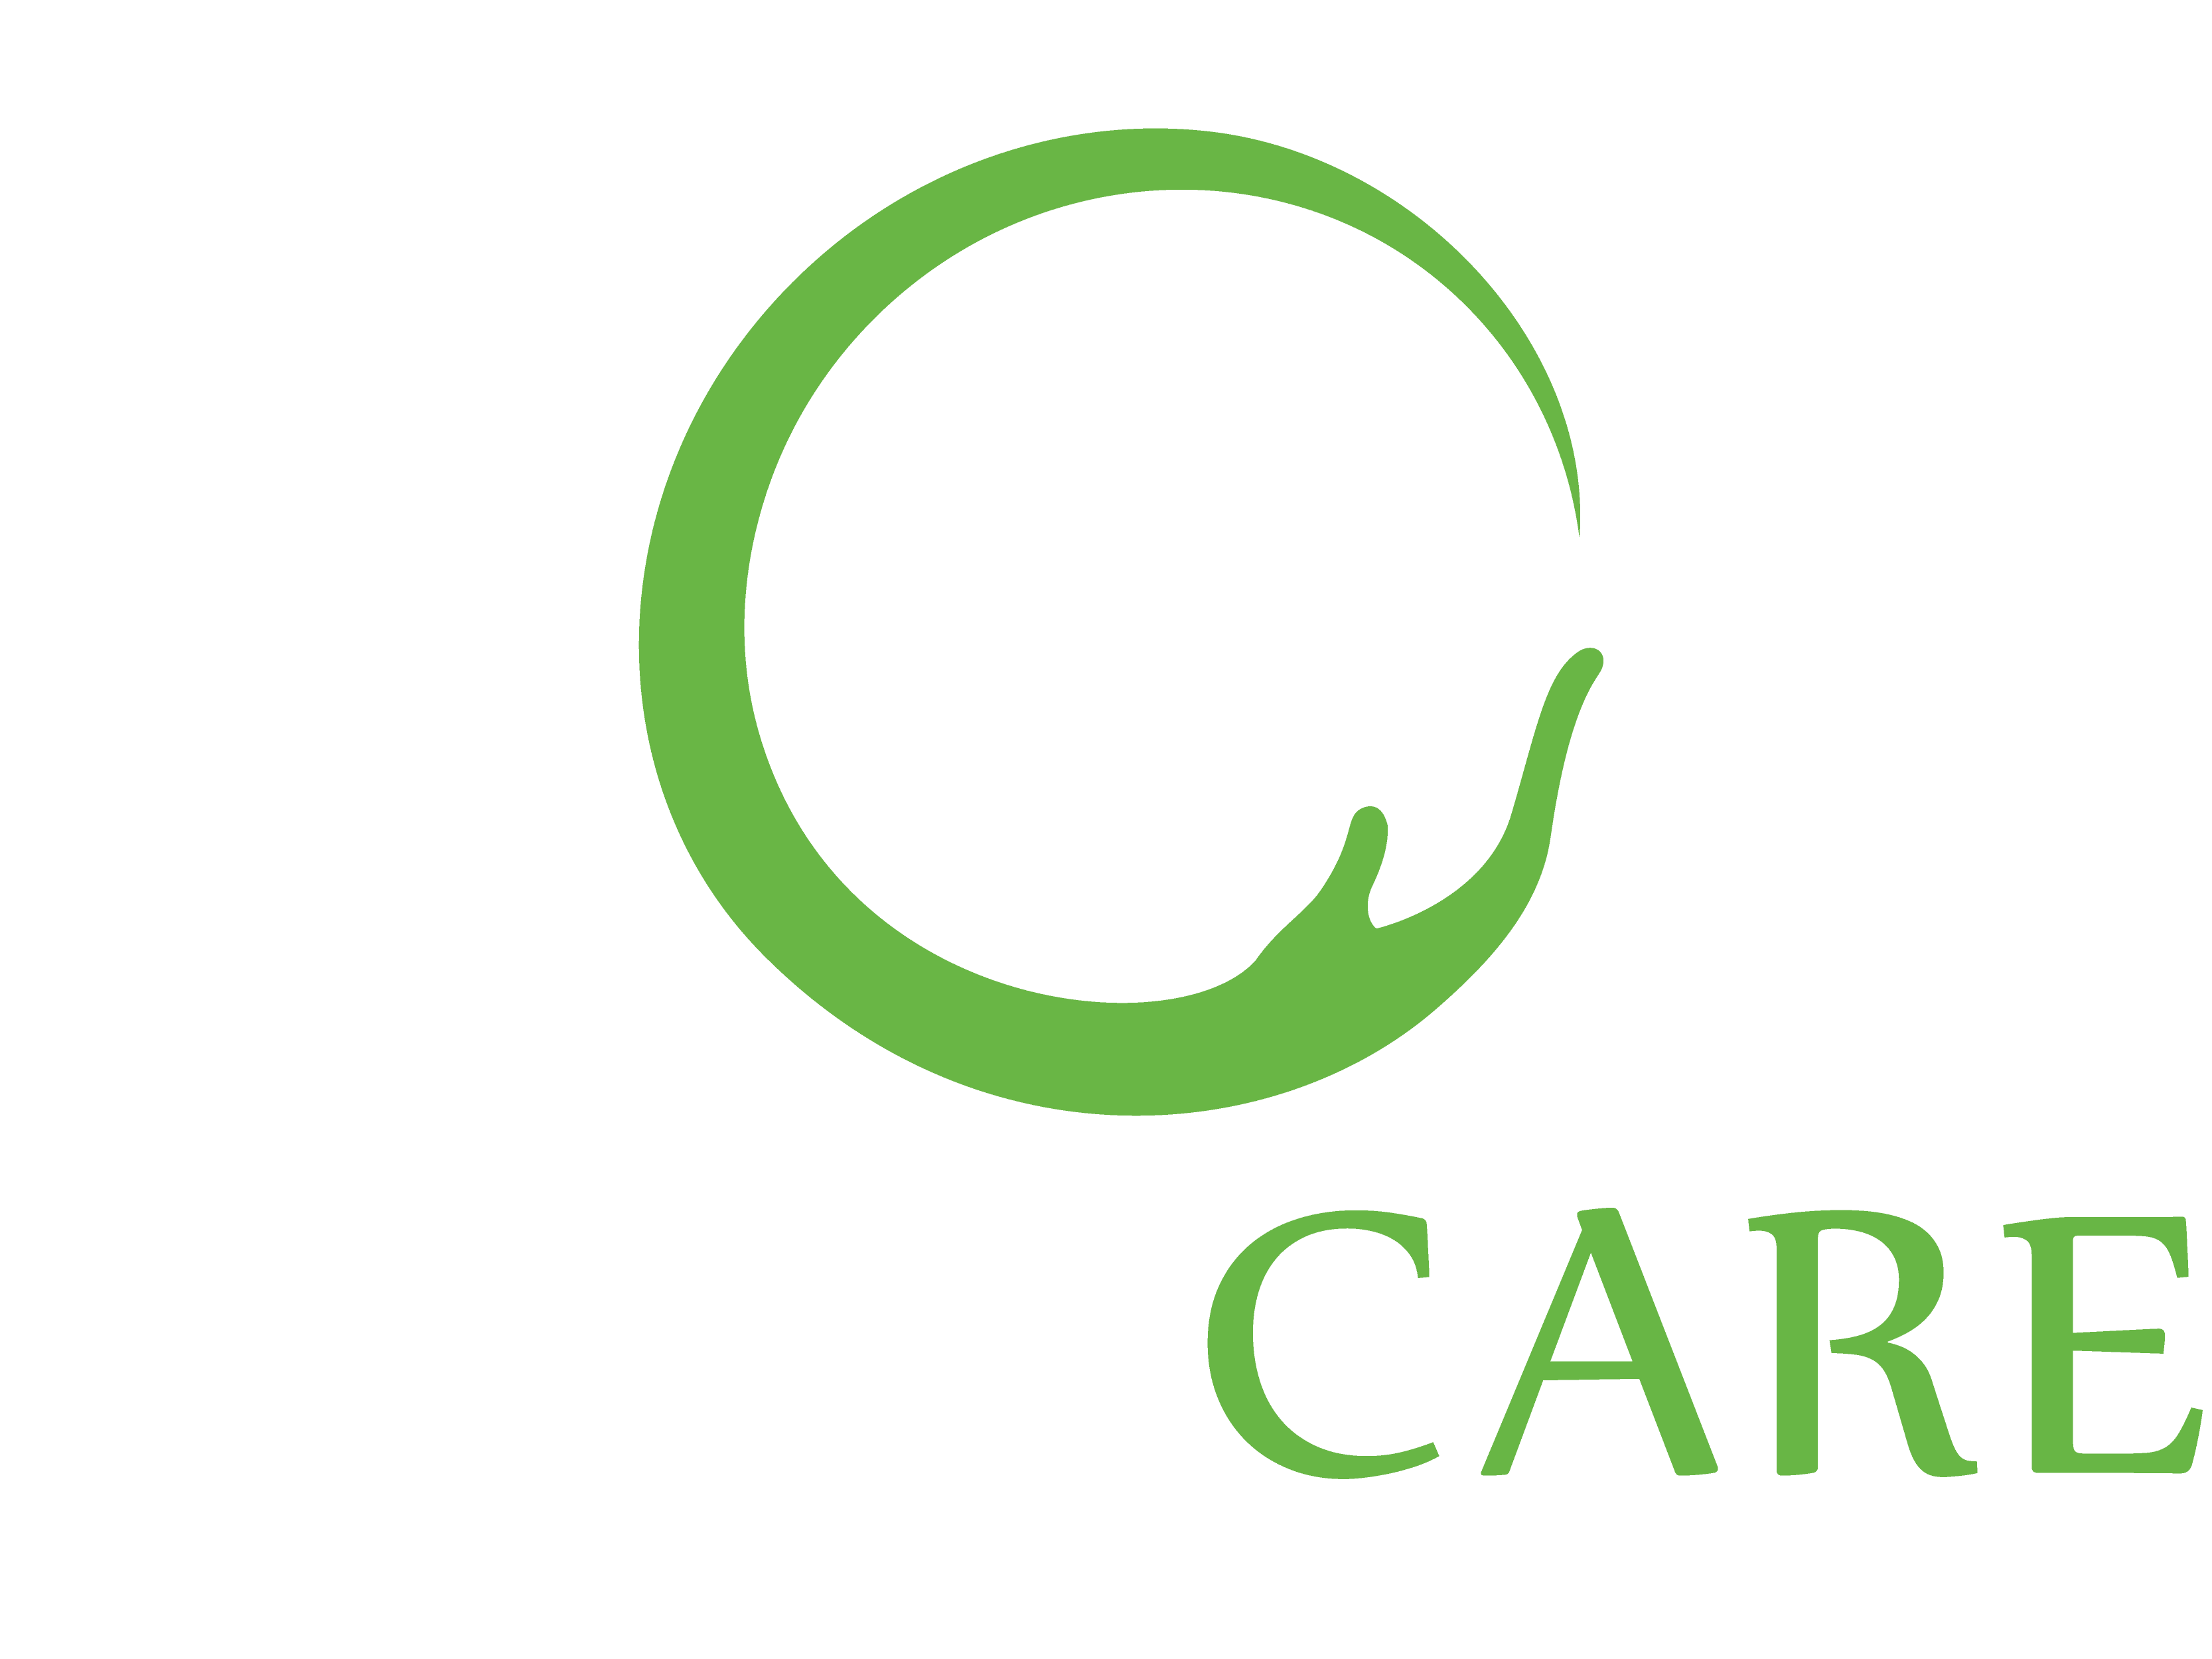 Care Logo - Eidyn Care Logo 01 2 Copy. Eidyn Care Care Providers